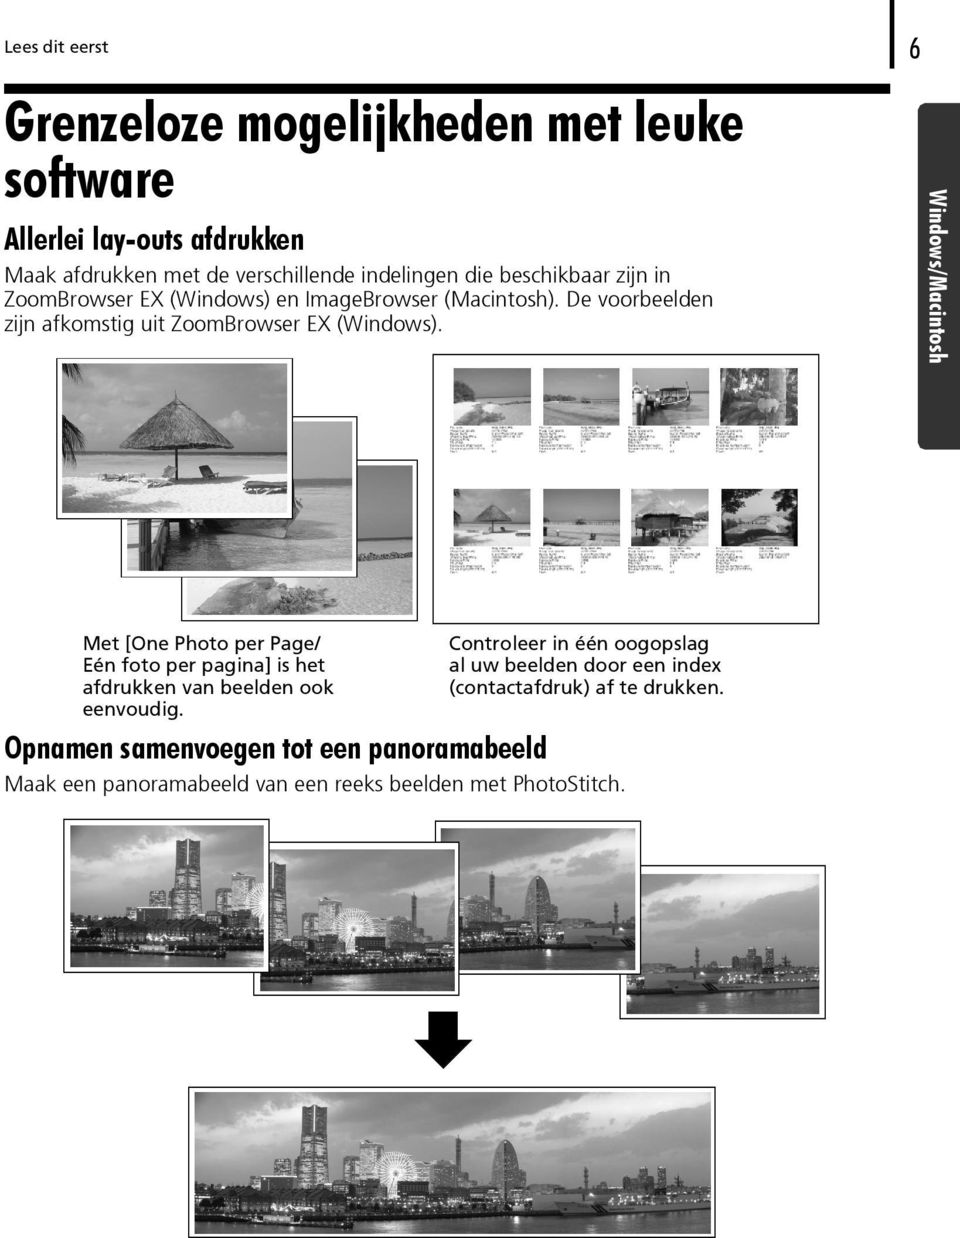 Windows/Macintosh Met [One Photo per Page/ Eén foto per pagina] is het afdrukken van beelden ook eenvoudig.